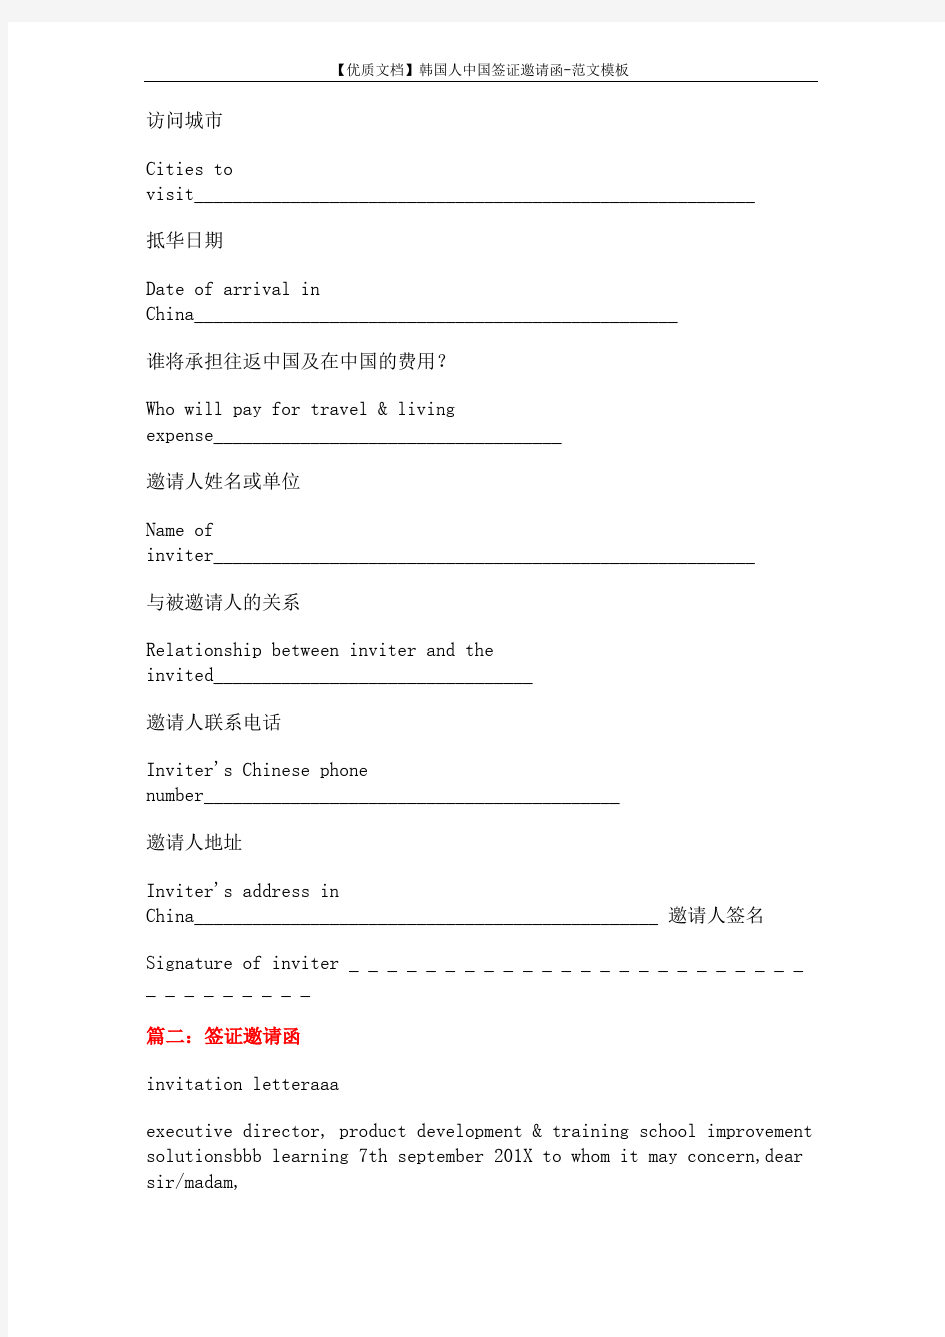 【优质文档】韩国人中国签证邀请函-范文模板 (10页)